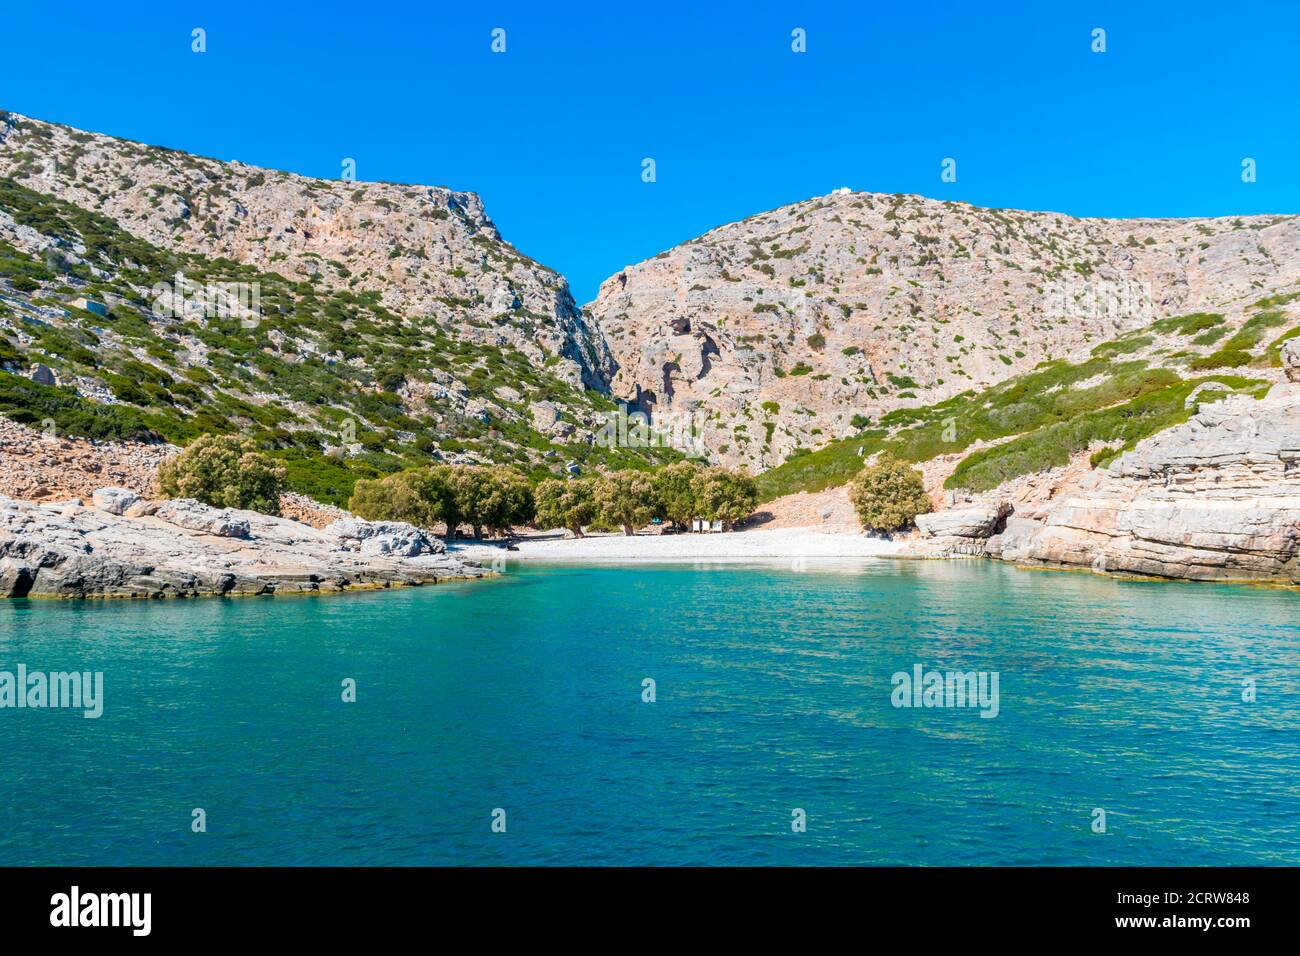 Palatia, plage Turquoise sur l'île de Saria avec chapelle blanche au-dessus, île de Karpathos, Grèce Banque D'Images